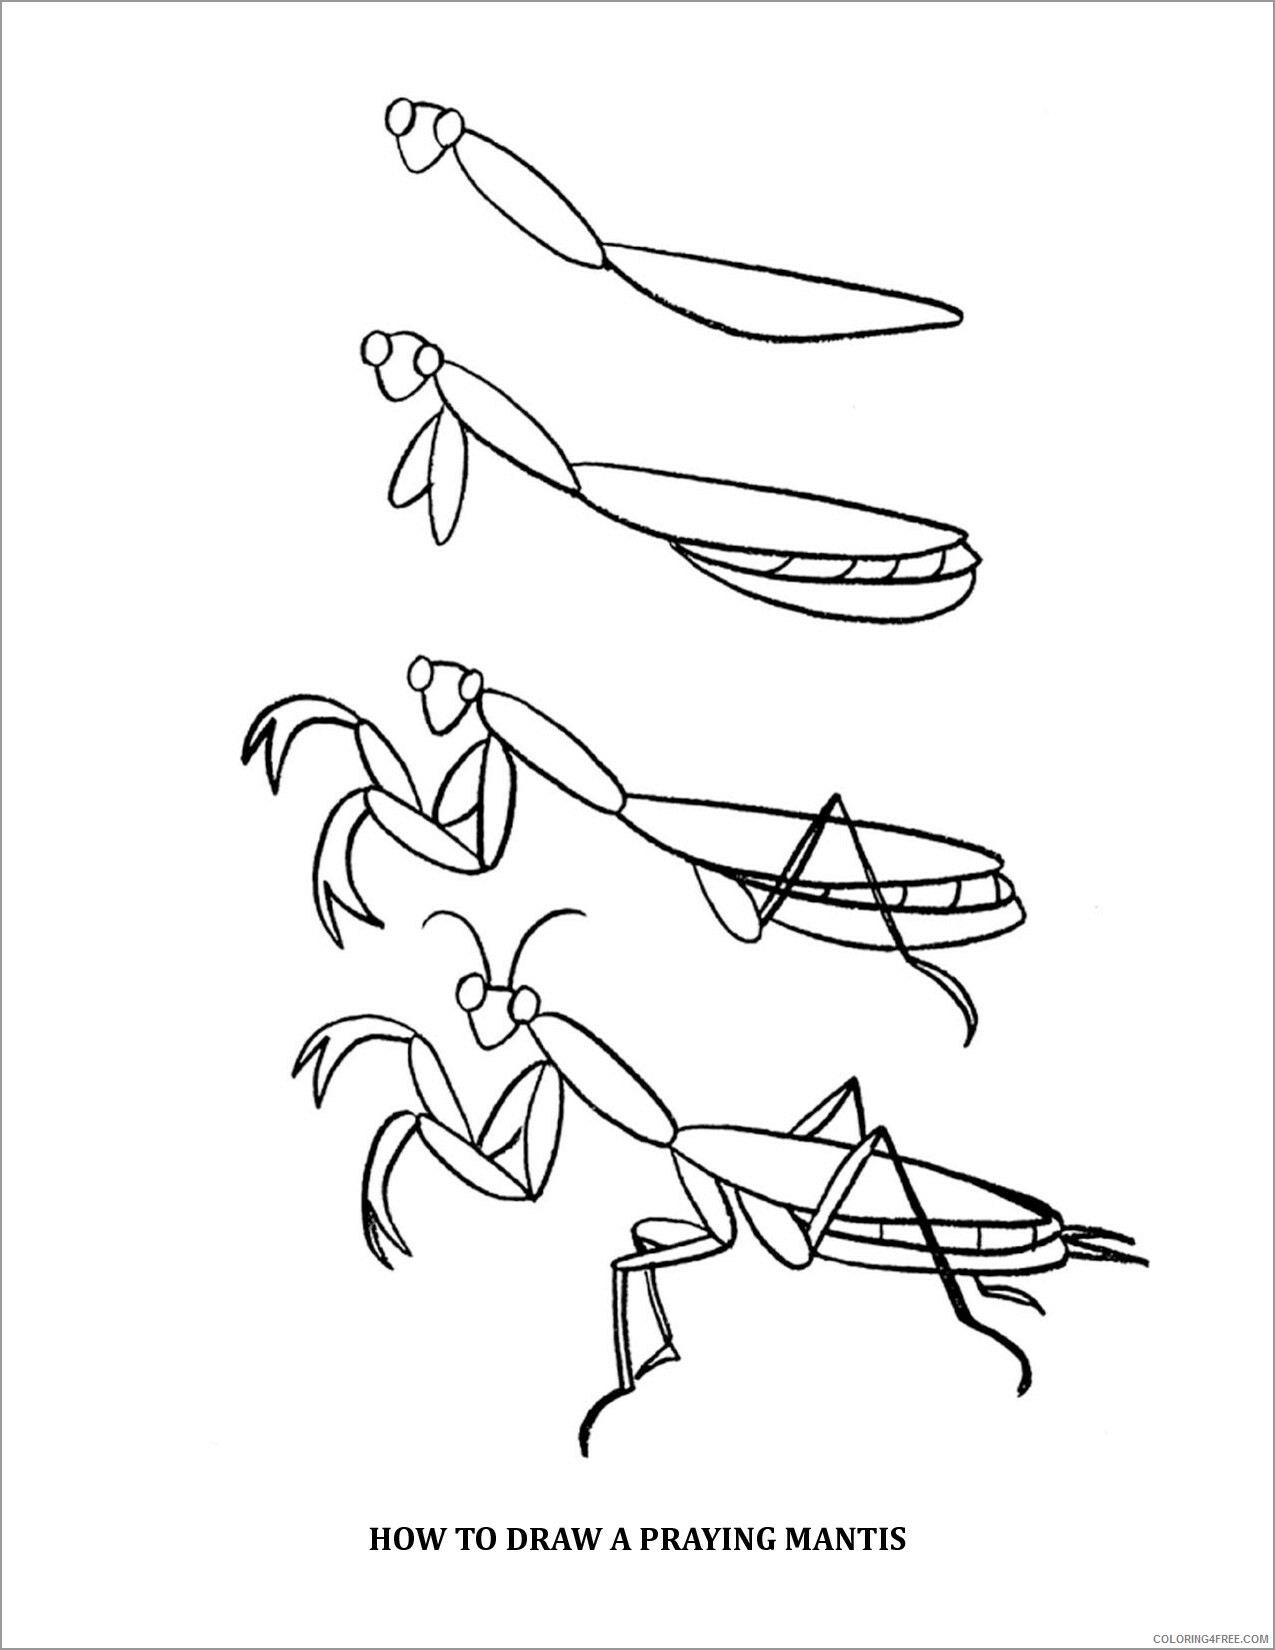 Praying Mantis Coloring Pages Animal Printable how to draw praying mantis 2021 Coloring4free